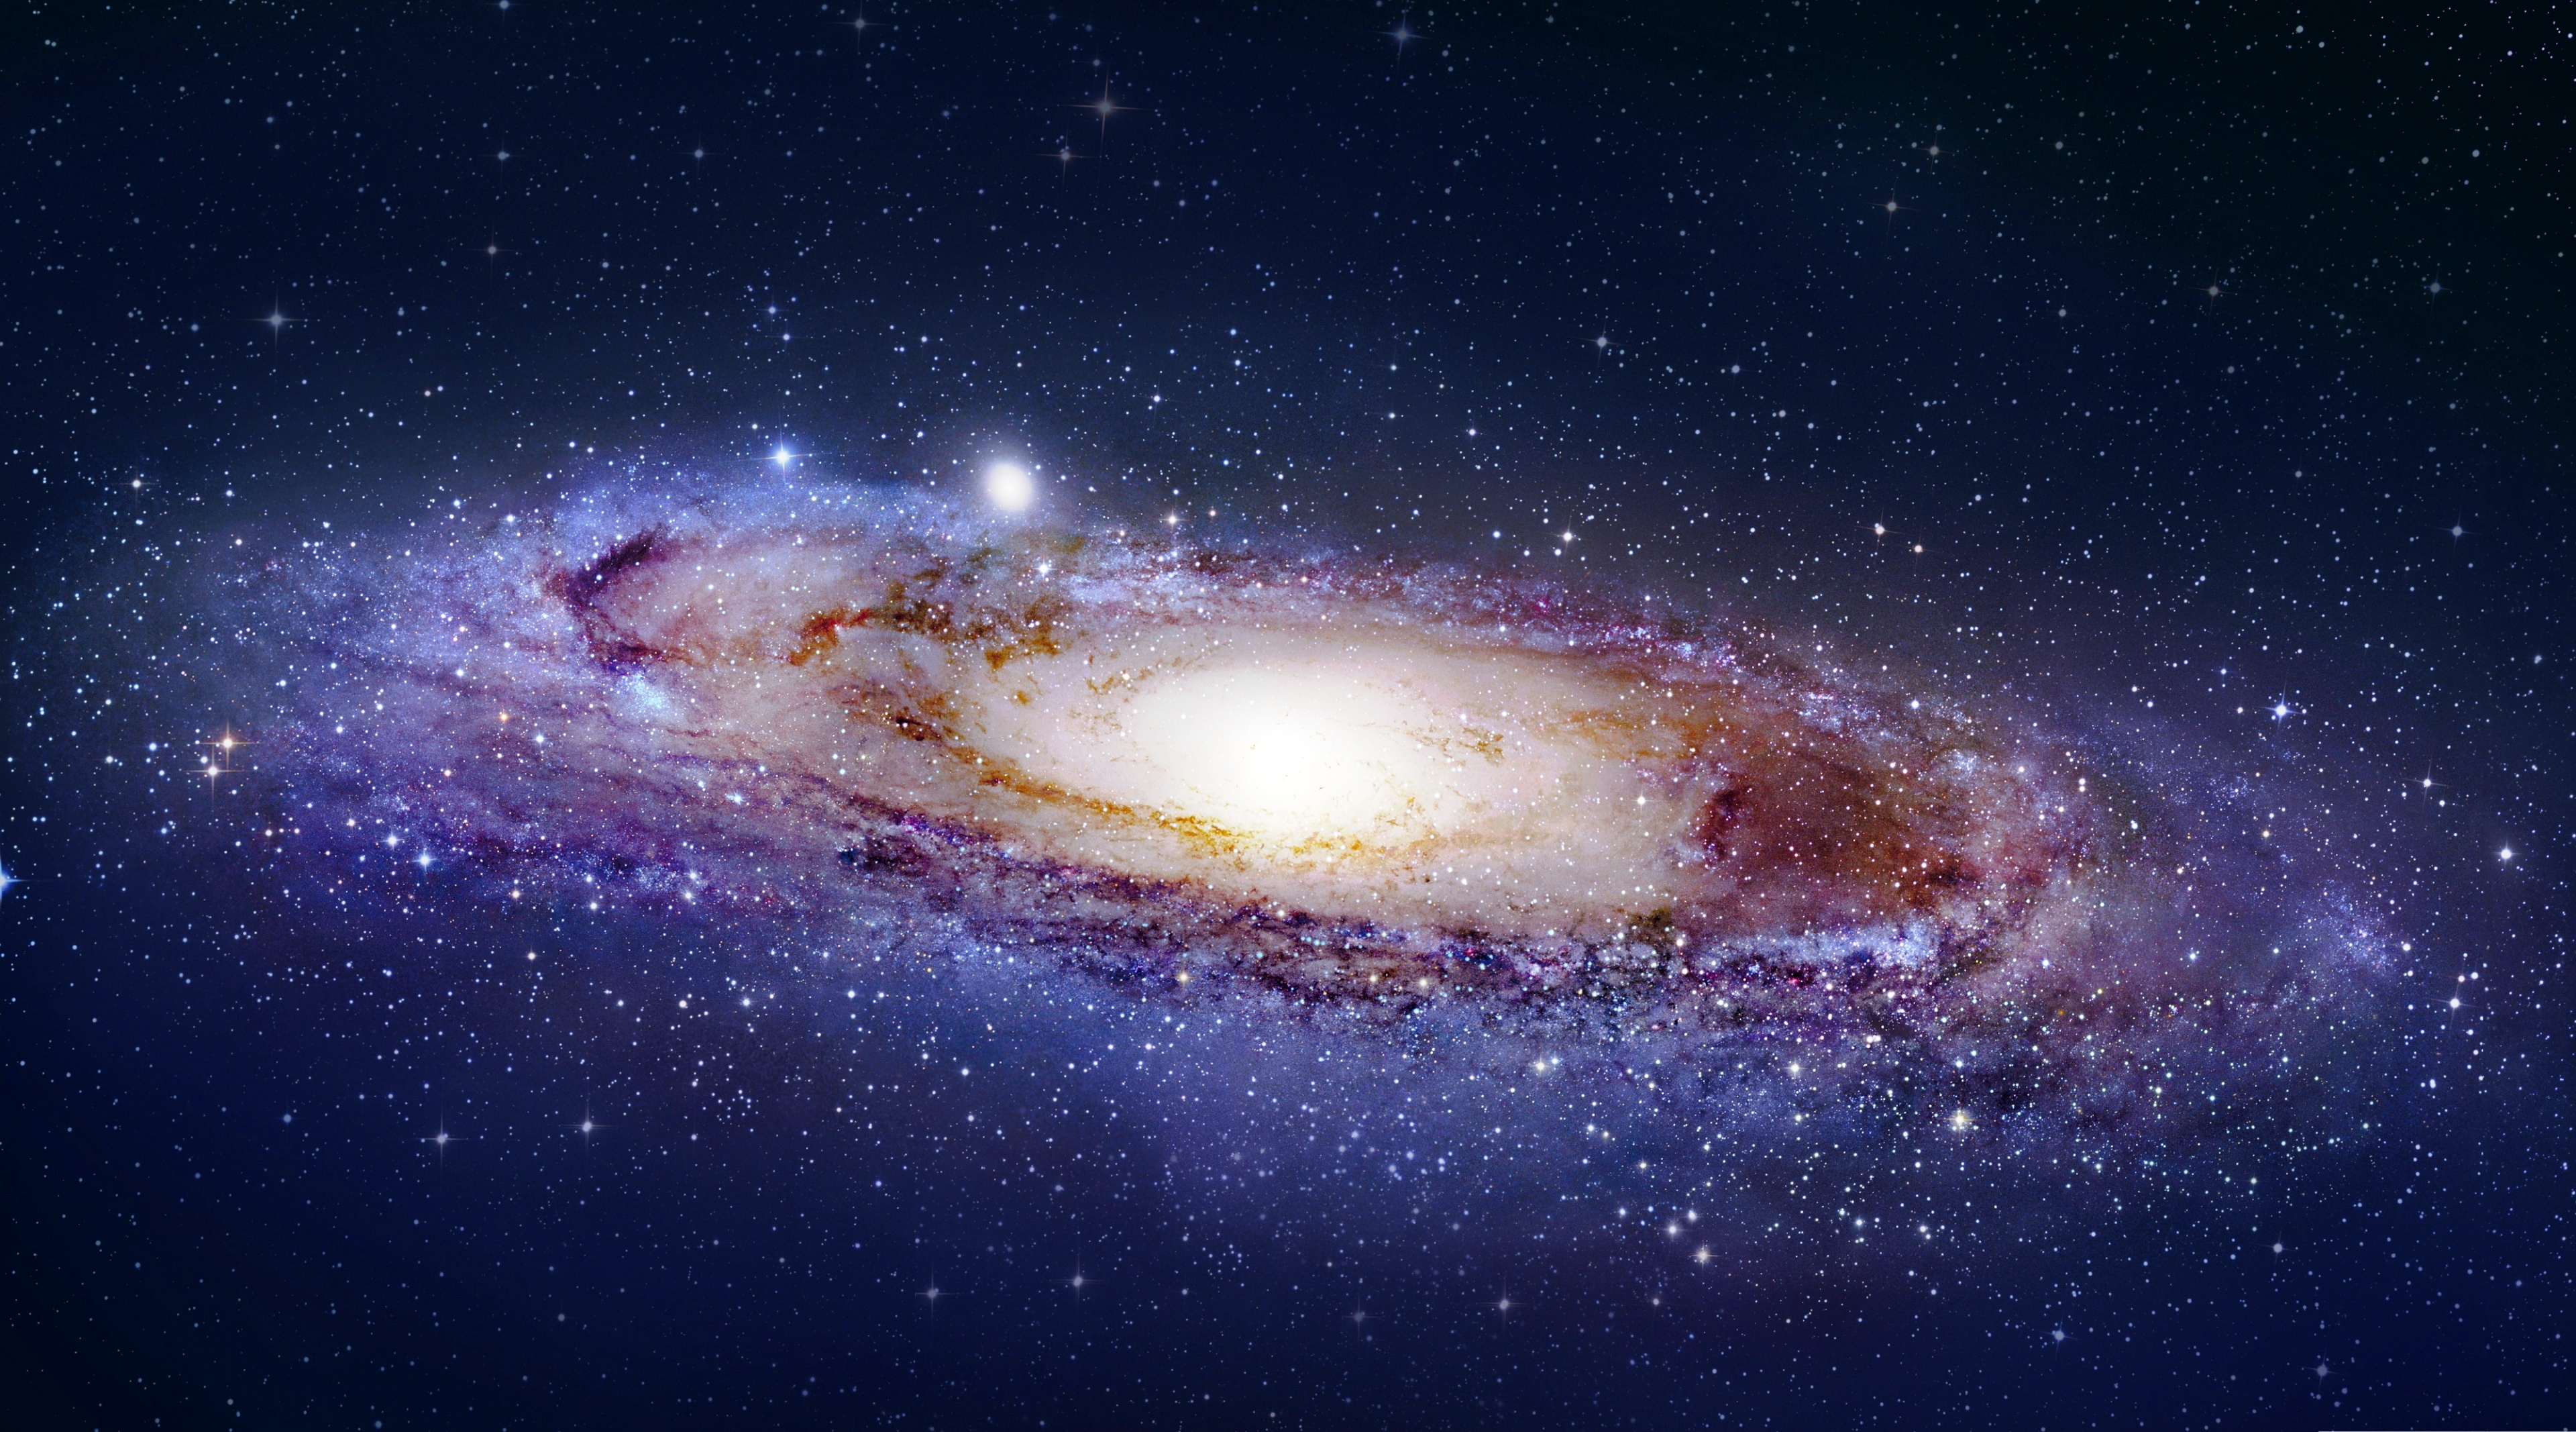 Tải về danh mục Không gian Tags Thiên hà Andromeda Ngân Hà... ngay từ bây giờ để đổi mới và làm mới màn hình của mình với những hình ảnh vô cùng ấn tượng và chất lượng tại Wallpapers.com. Đừng bỏ lỡ cơ hội thưởng thức những tác phẩm sáng tạo này, bạn nhé!